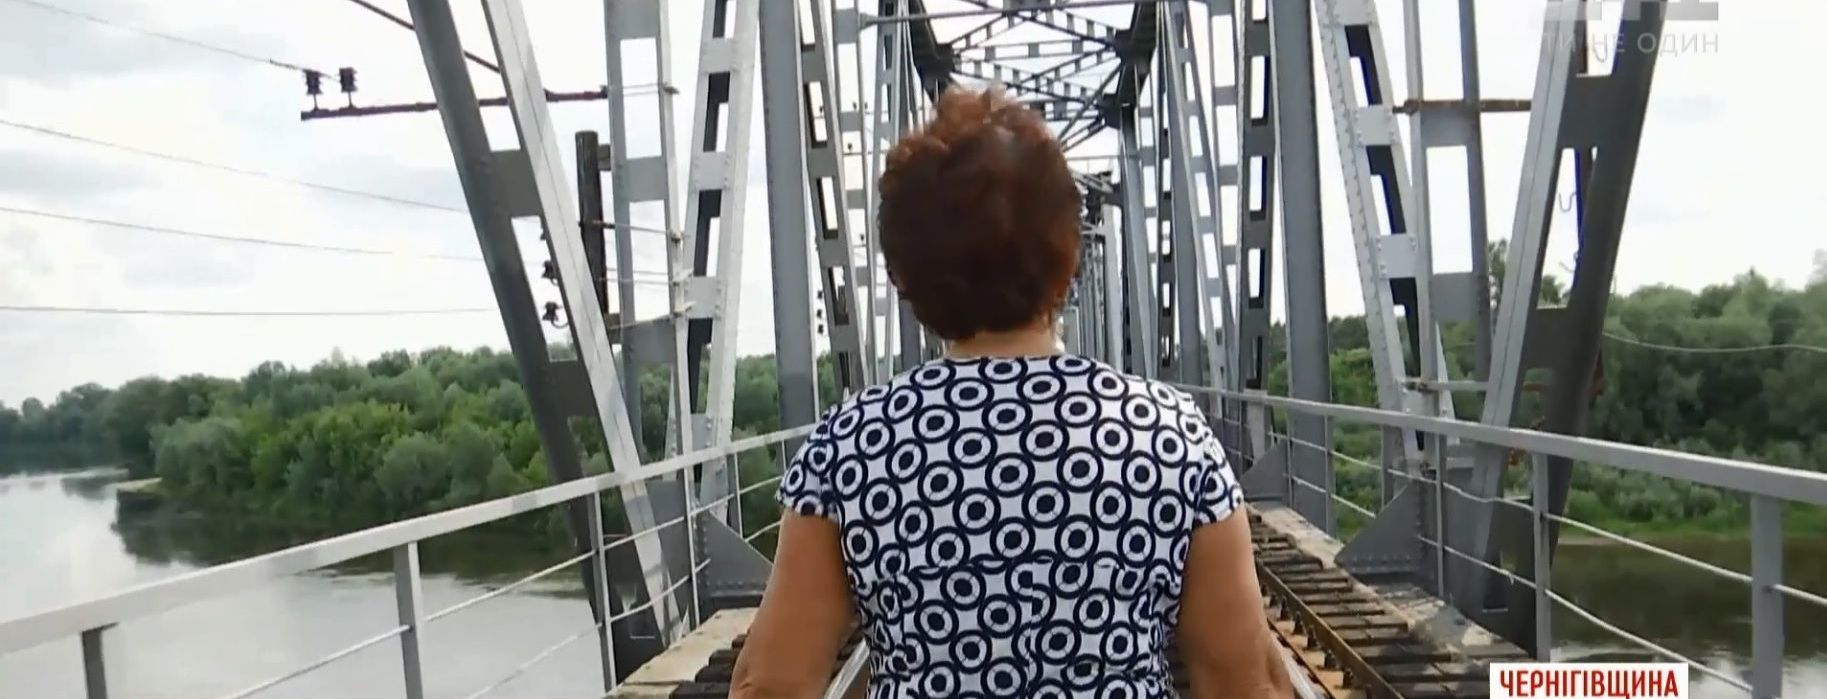 На Черниговщине в результате модернизации железной дороге может появиться "мост смерти"